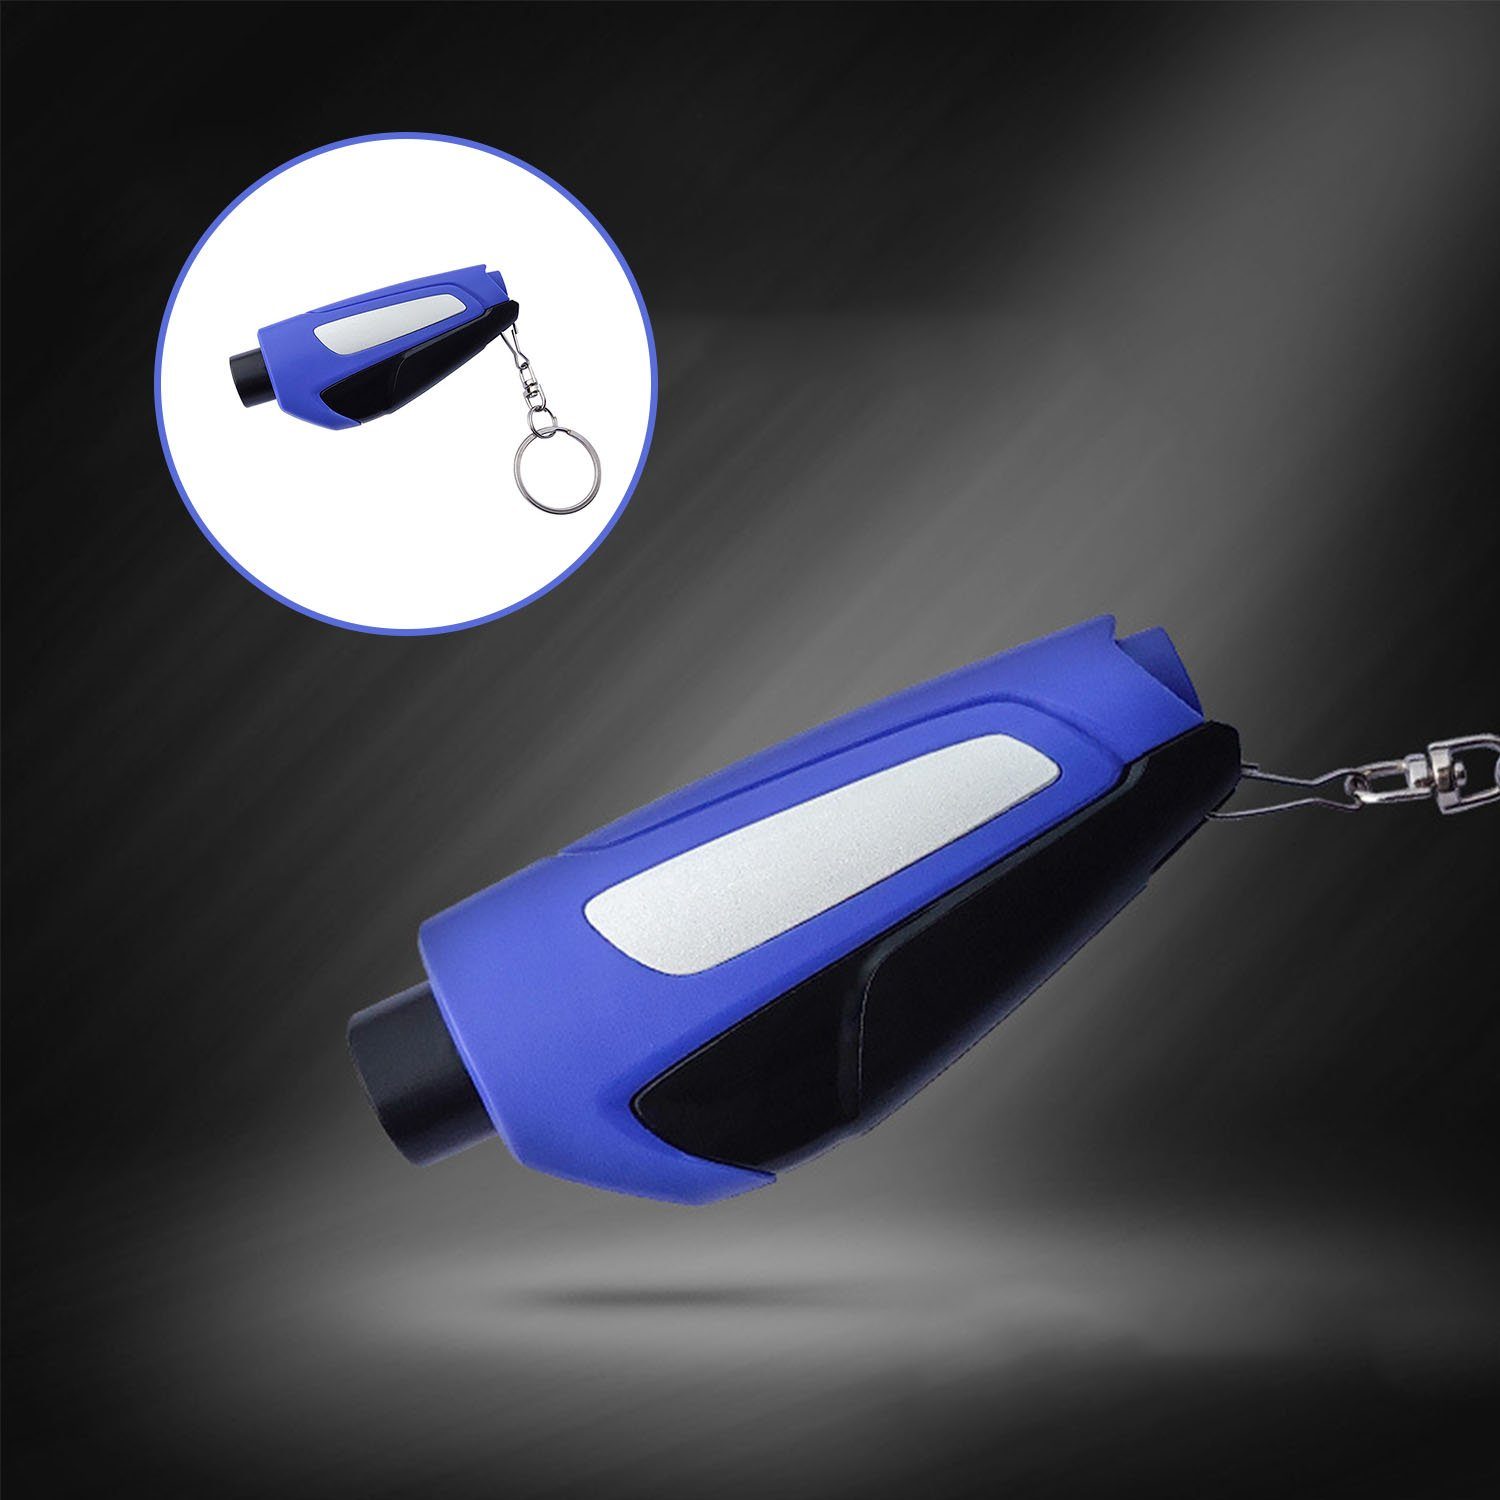 Hammertacker Typ (1 Notfall Schlüsselanhänger tlg), MAGICSHE Fensterbrecher Werkzeug, Blau Autonotrettungswerkzeug Mini